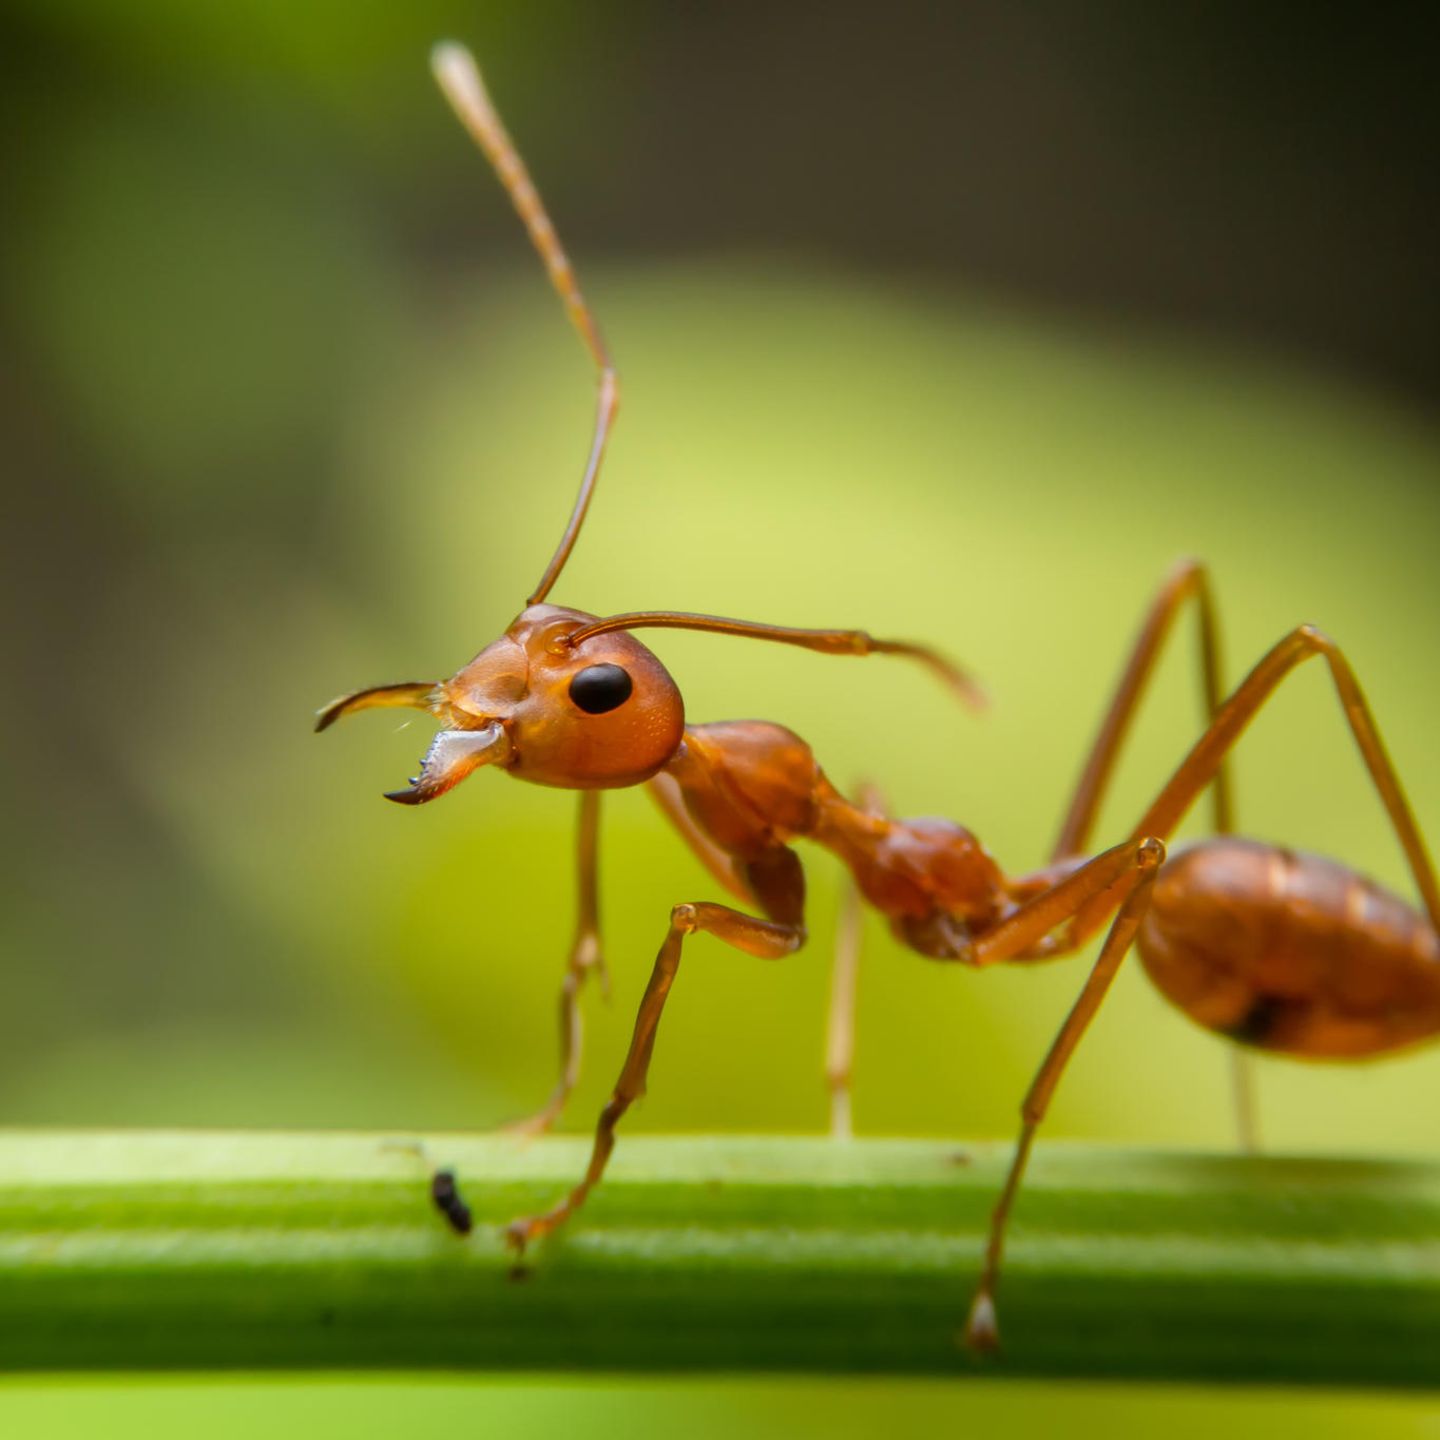 Parasiten lassen Ameisen länger leben – mit einem perfiden Ziel - [GEO]